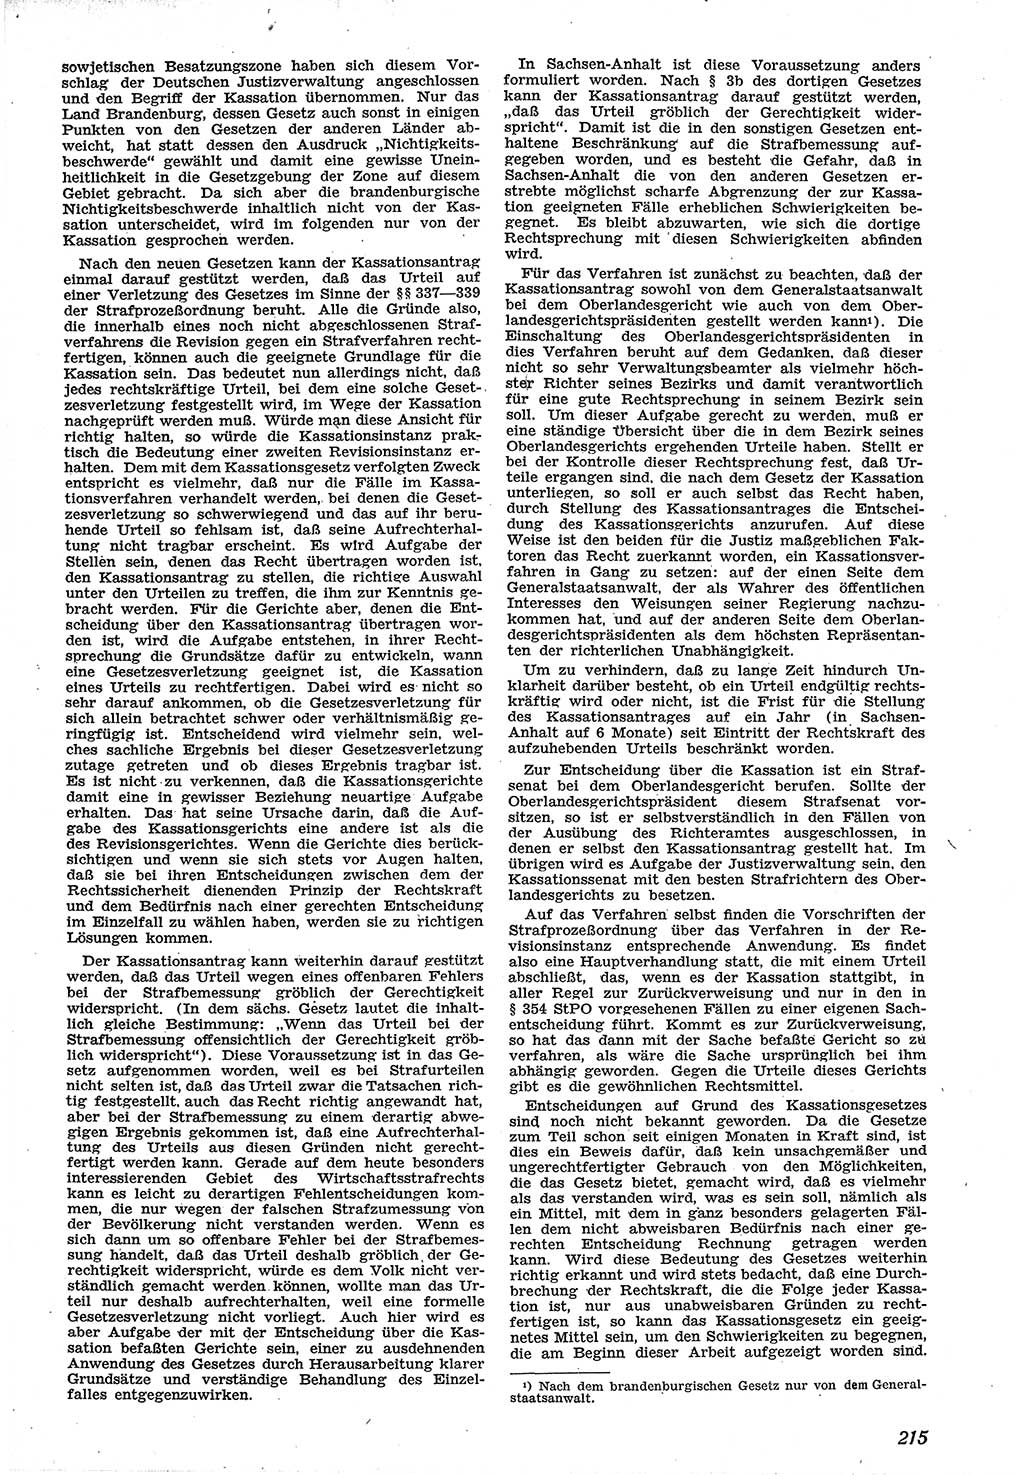 Neue Justiz (NJ), Zeitschrift für Recht und Rechtswissenschaft [Sowjetische Besatzungszone (SBZ) Deutschland], 1. Jahrgang 1947, Seite 215 (NJ SBZ Dtl. 1947, S. 215)